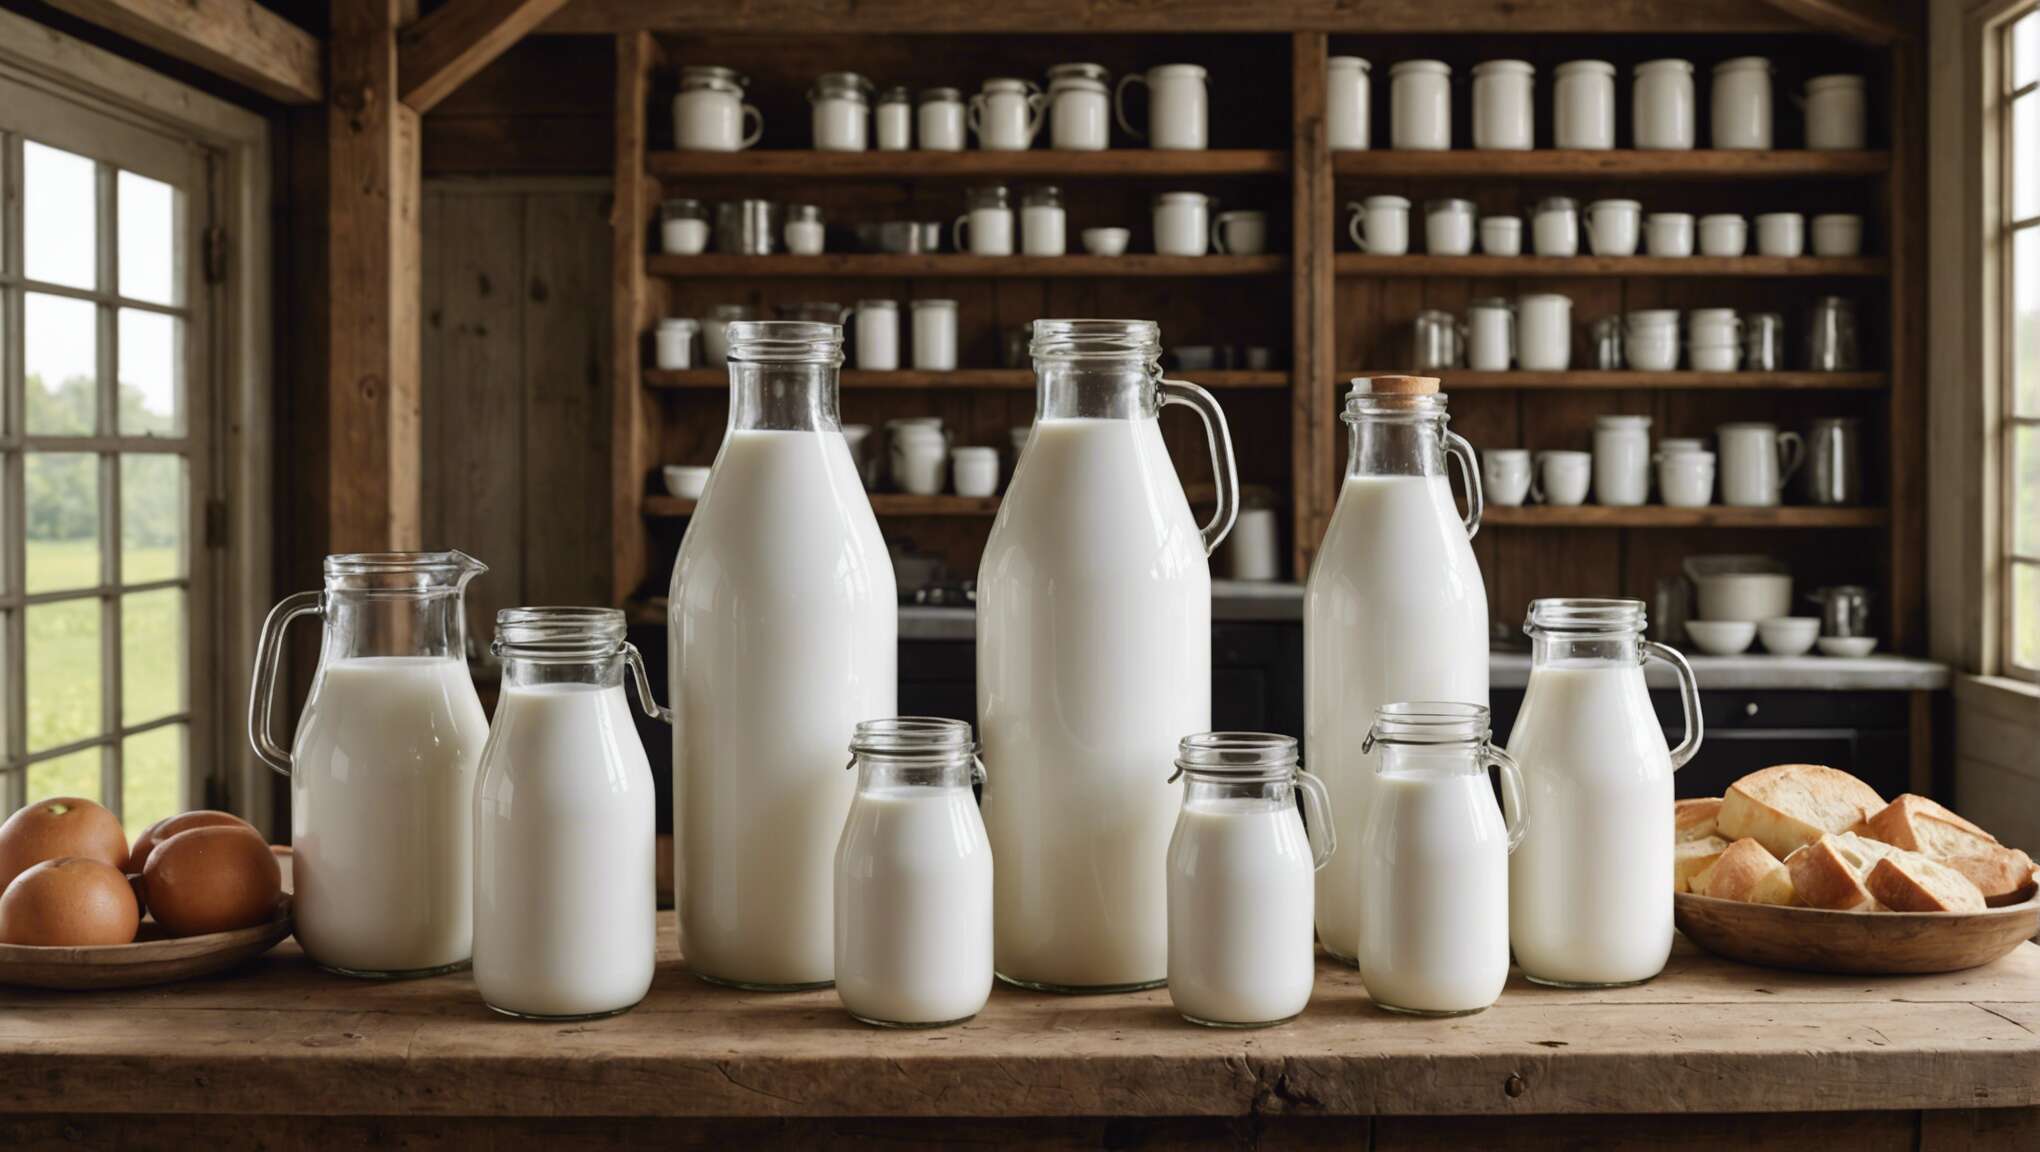 Choix du contenant et influence sur la durée de vie du lait